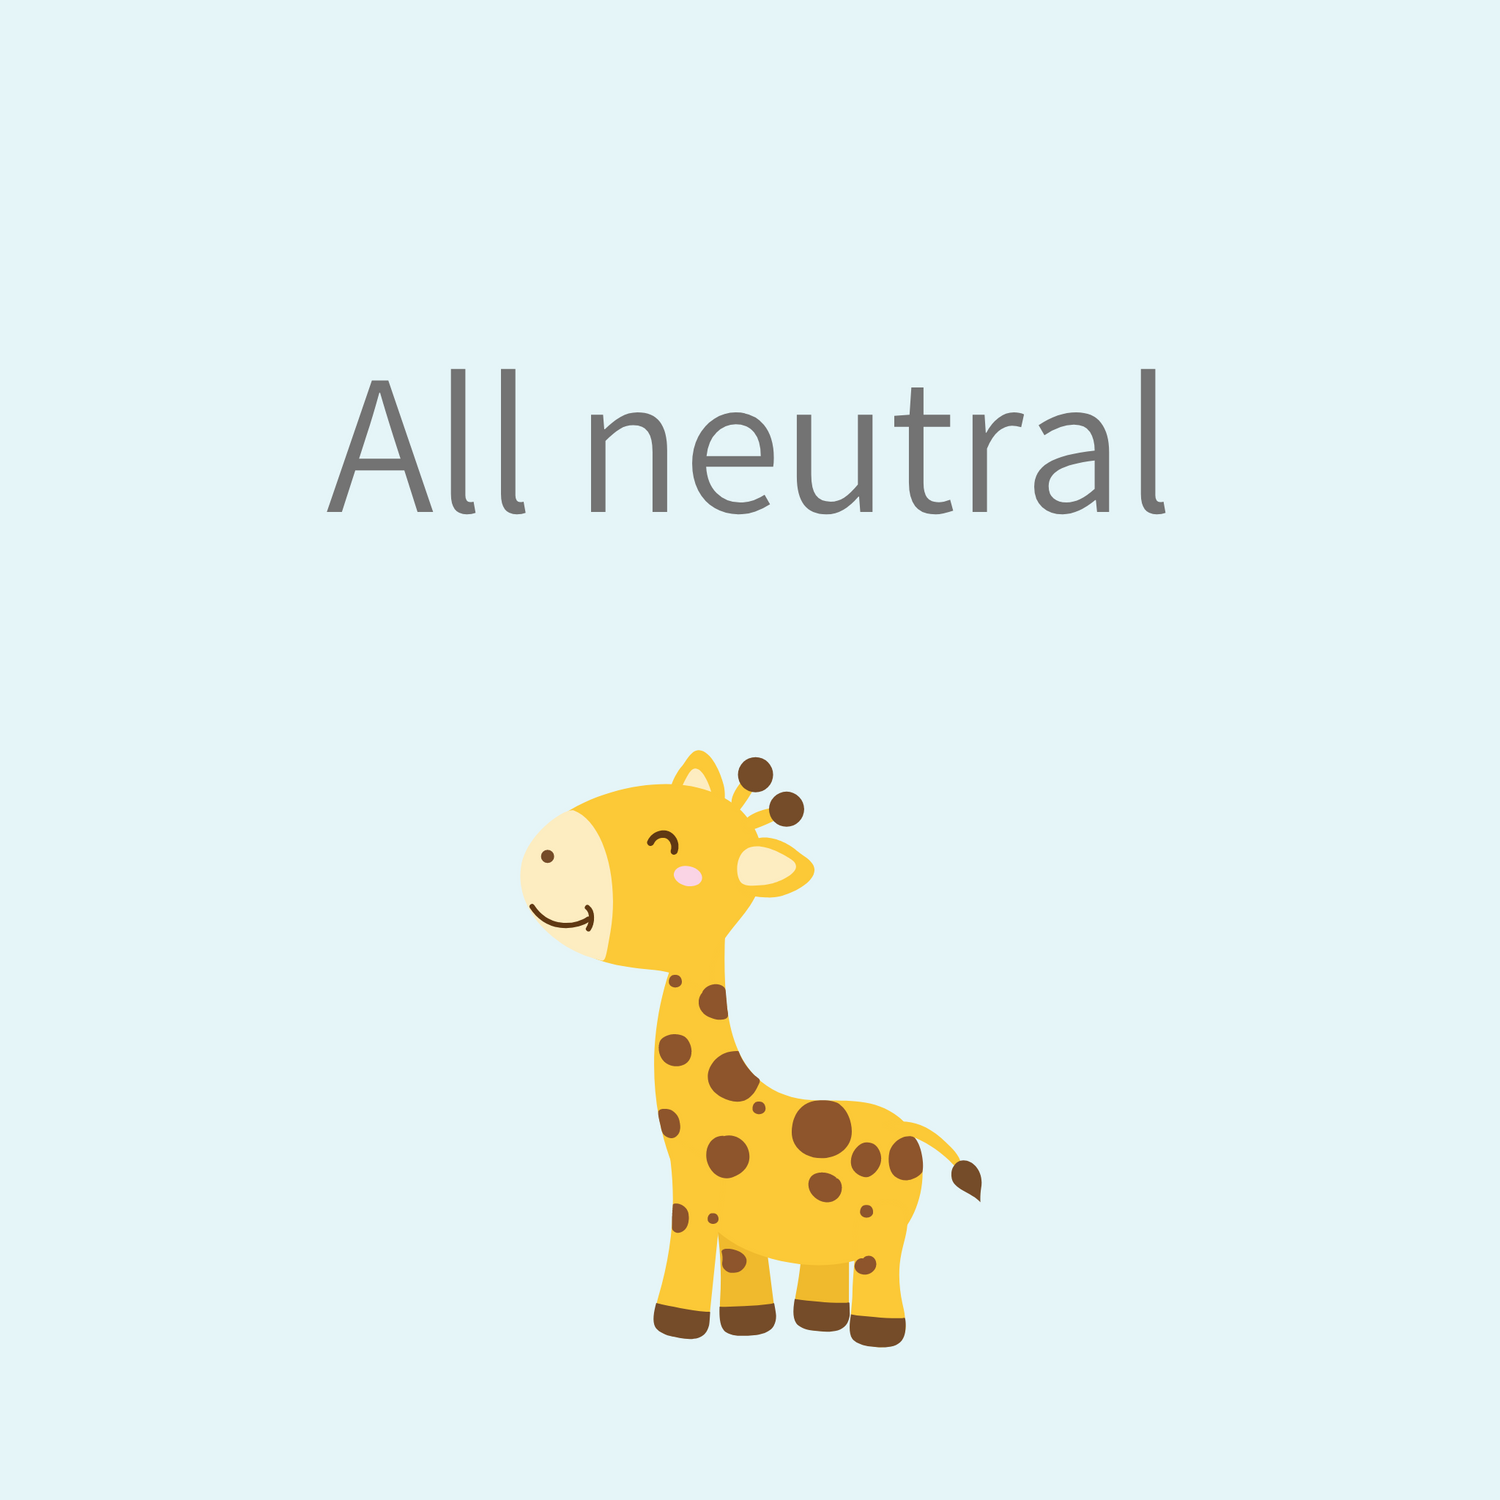 All neutral